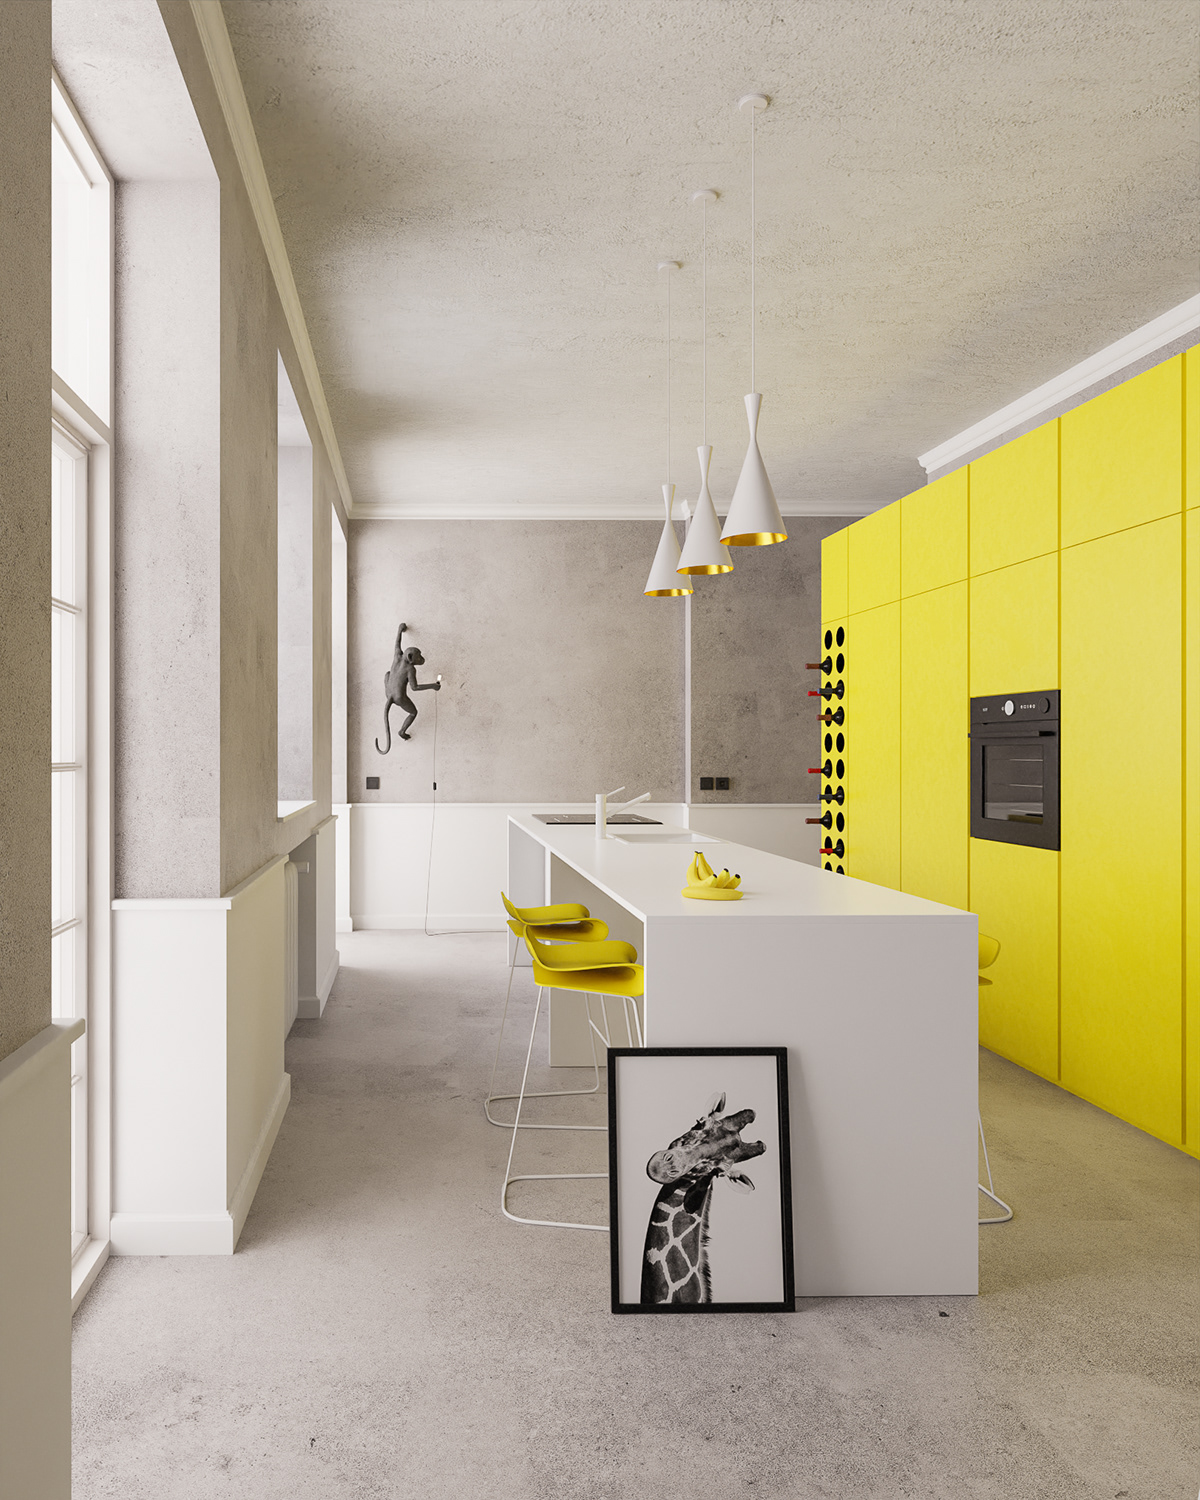 architecture archviz blender CGI cycles design Interior kitchen yellow